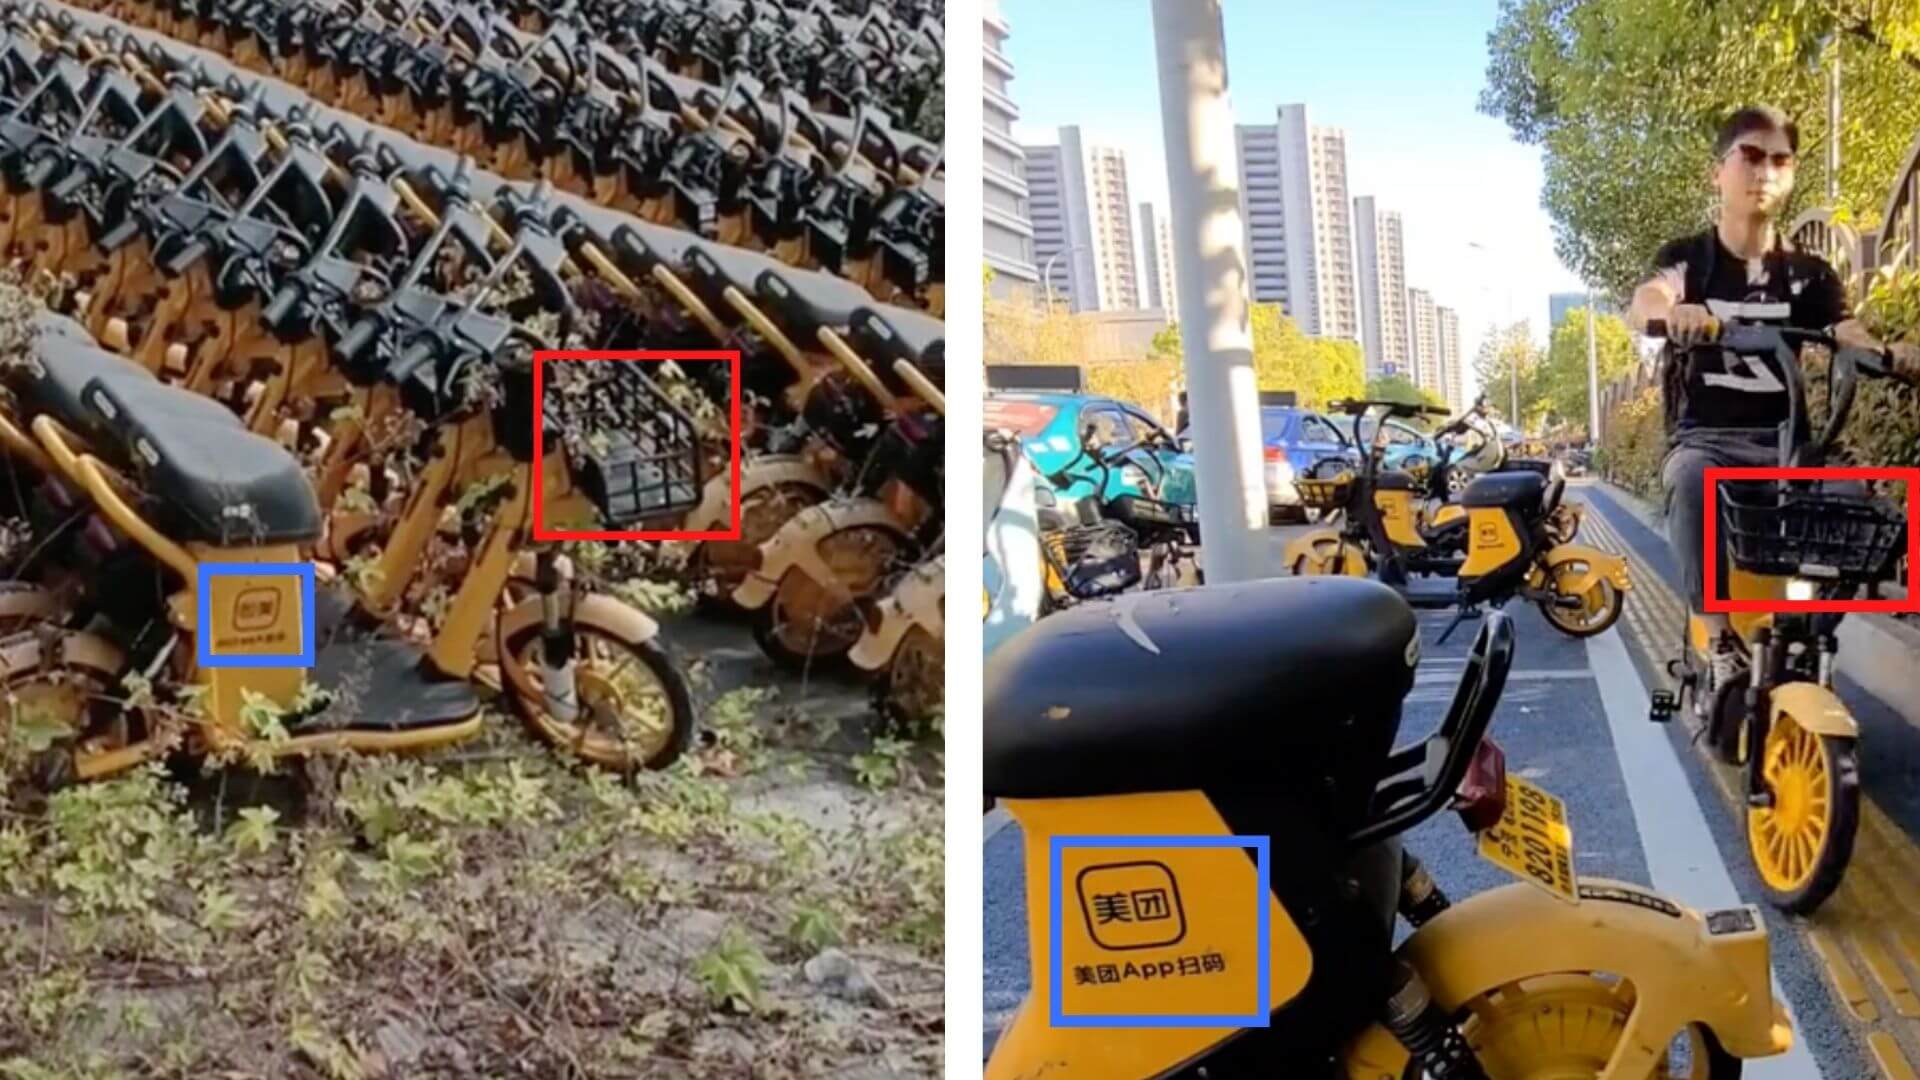 Ein Vergleich mit dem Video, das in Sozialen Netzwerken kursiert (links) mit einem anderen Tiktok-Video (rechts) zeigt, dass es sich um Elektromopeds des chinesischen Unternehmens Meituan handelt